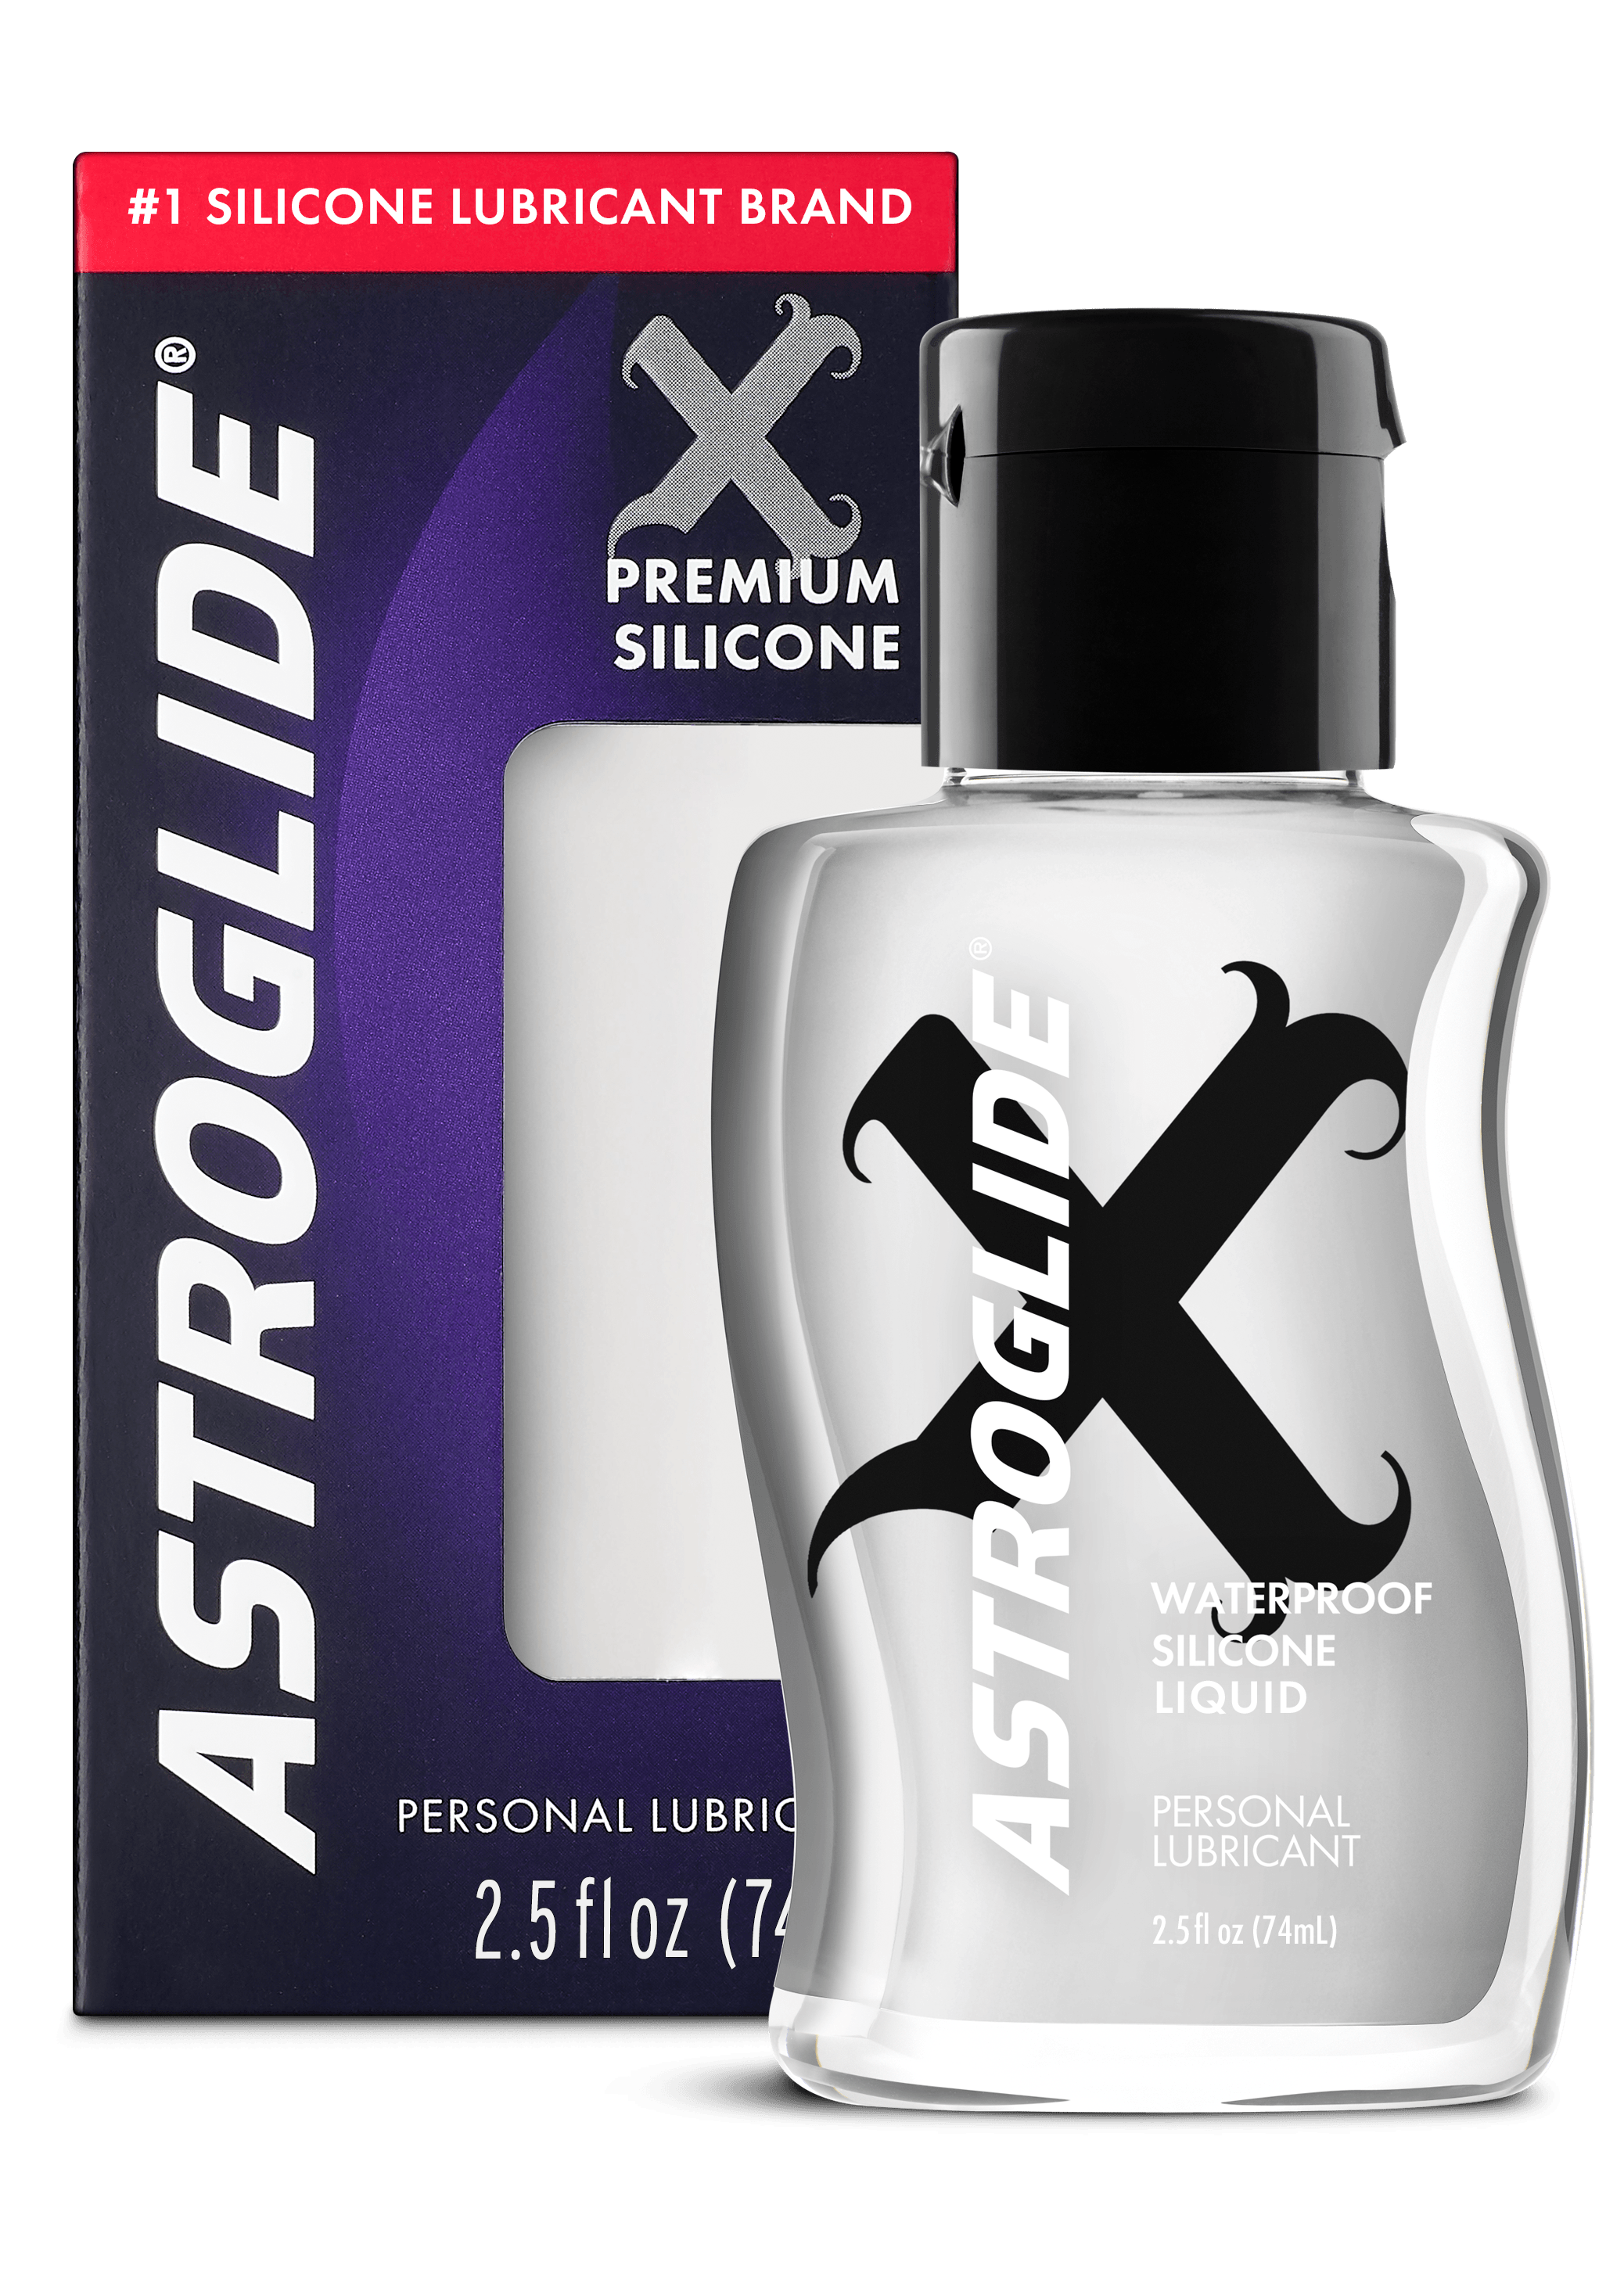 ASTROGLIDE X Premium Silicone Liquid 2.5oz Carton and Bottle Image